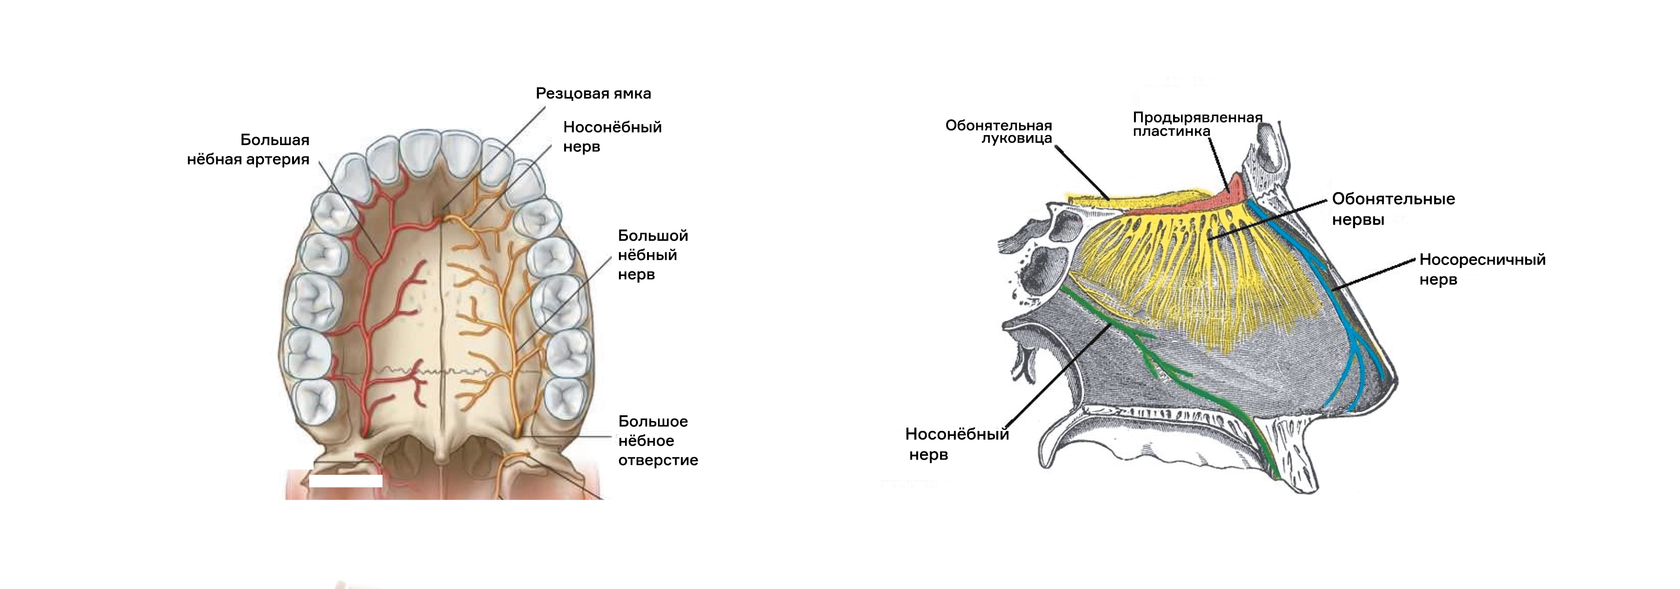 Резцовый канал верхней челюсти анатомия. Иннервация верхней челюсти нервы. Резцовый нерв верхней челюсти. Небный отросток верхней челюсти анатомия.